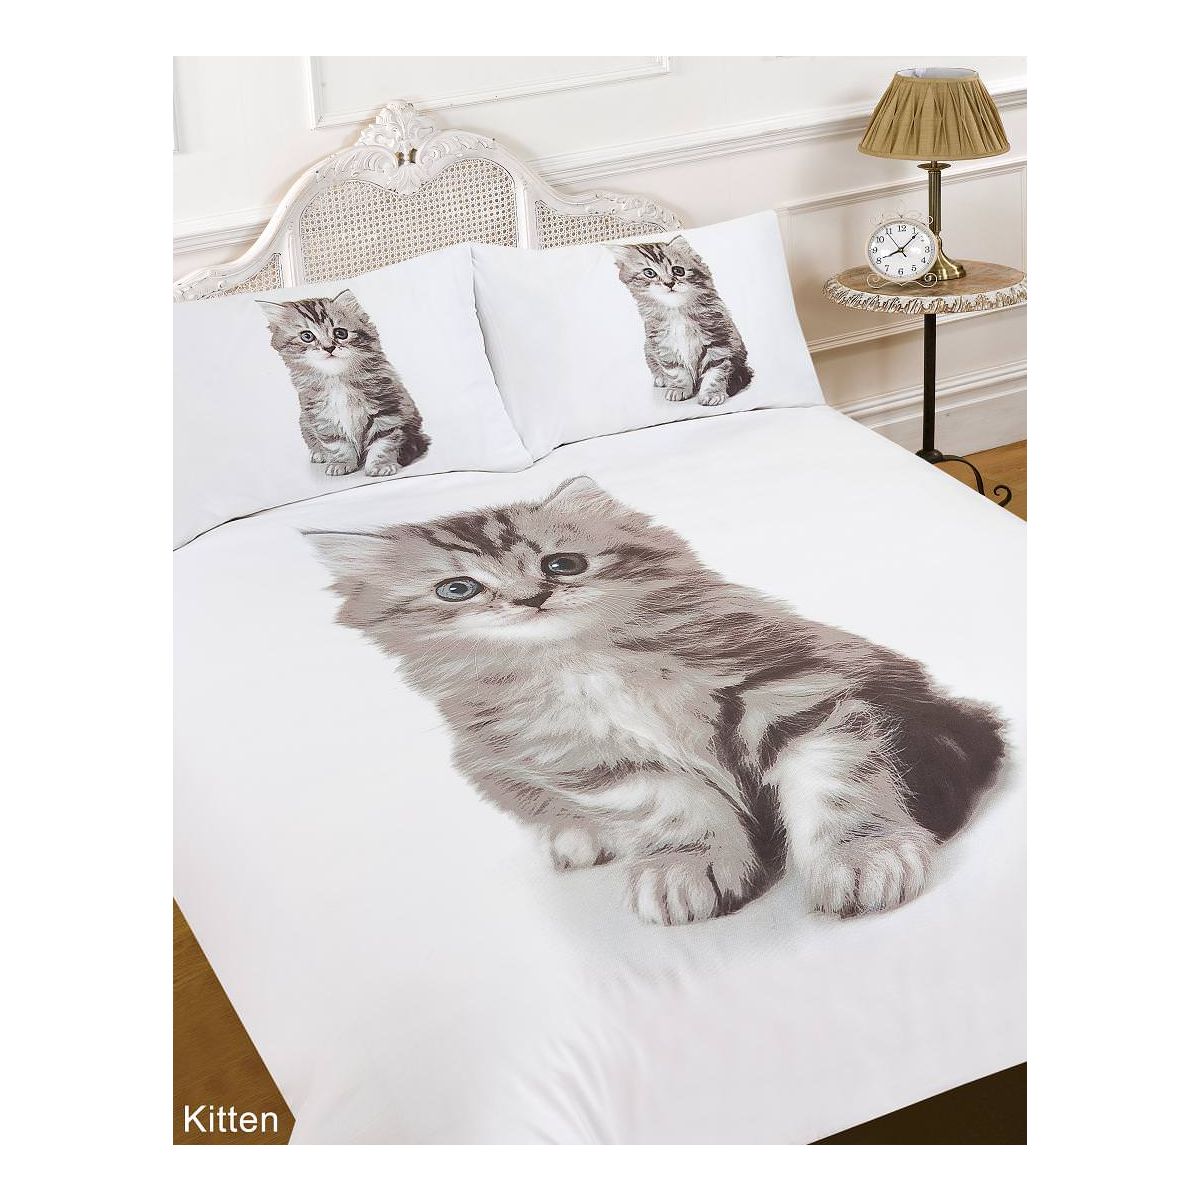 Dreamscene Animal Print Kitten Duvet Cover Bedding Set, White - Single